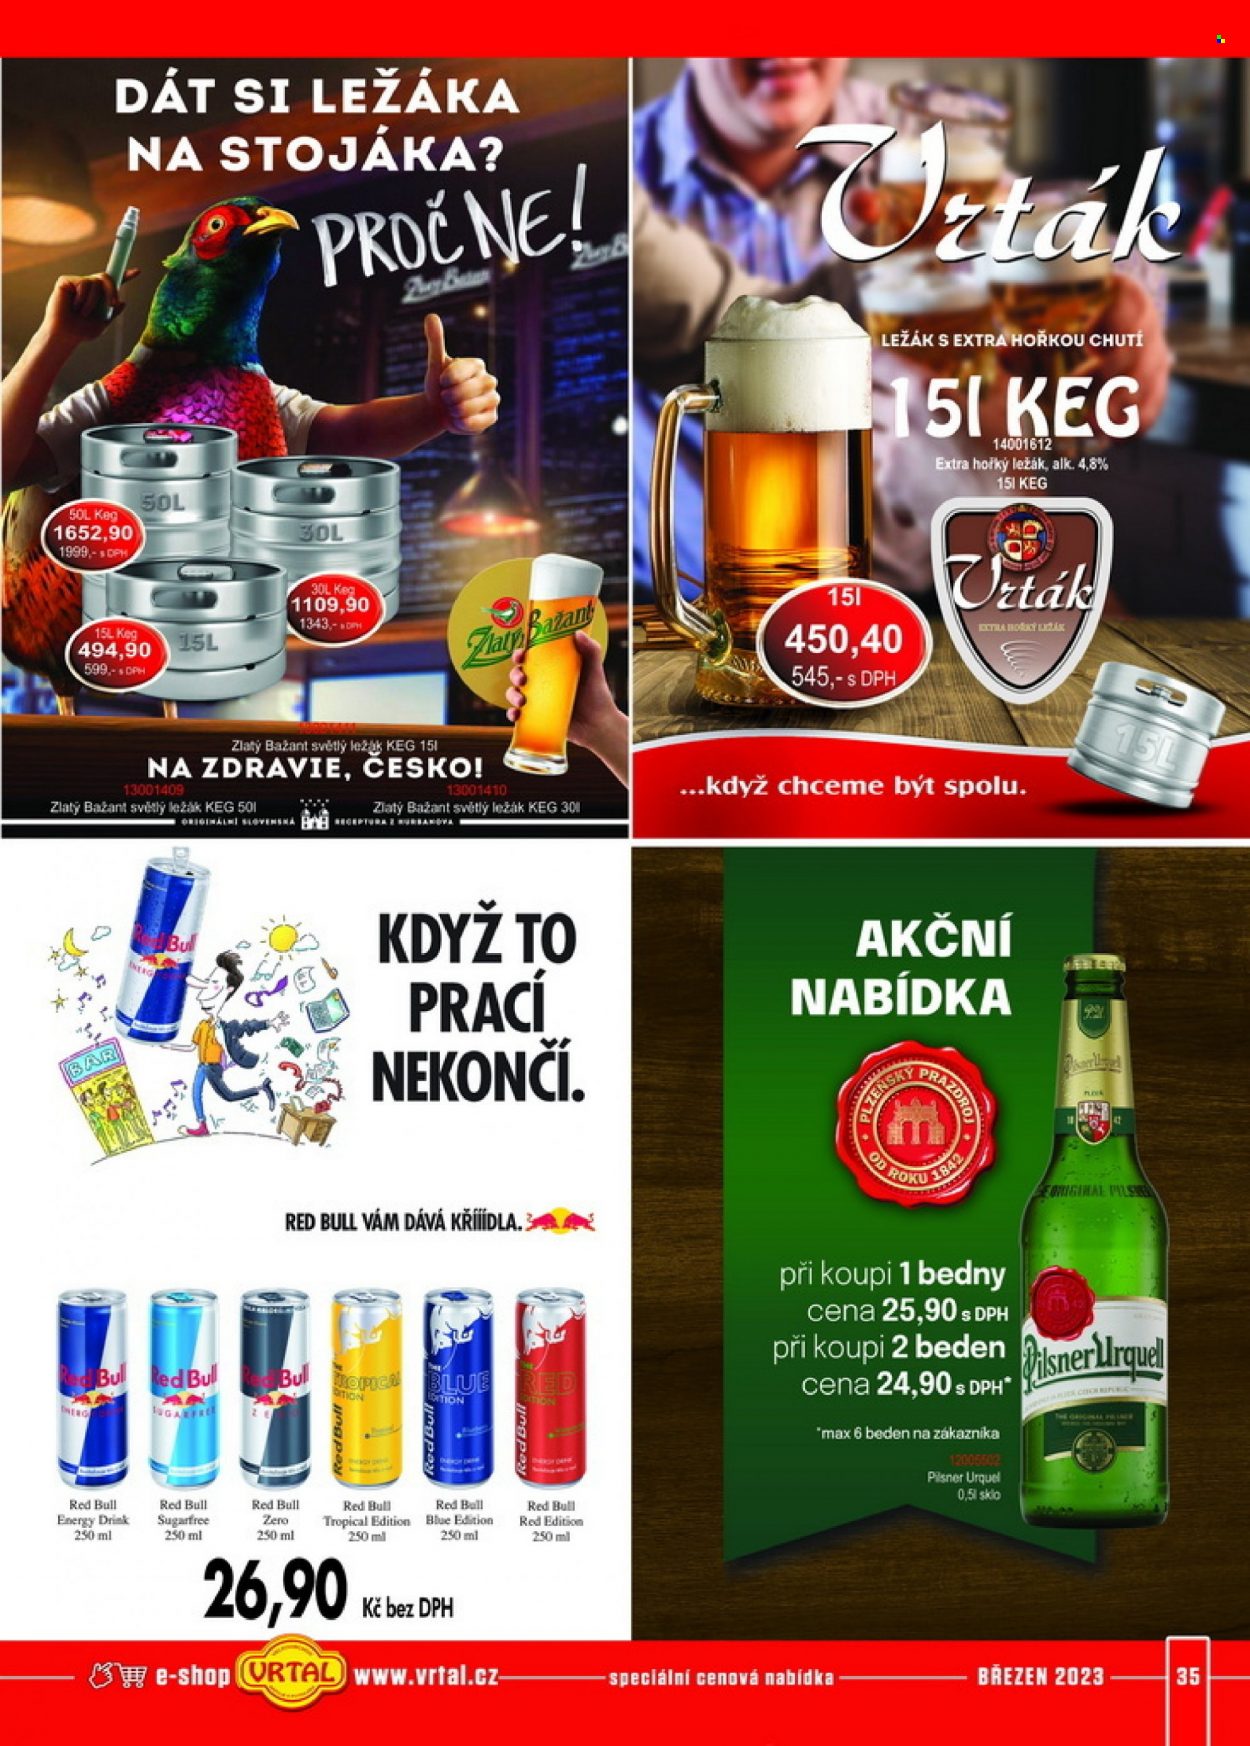 Leták Vrtal - 1.3.2023 - 31.3.2023 - Produkty v akci - energetický nápoj, Red Bull, světlé pivo, Pilsner Urquell, světlý ležák, ležák, Zlatý Bažant, pivo, alkohol, Sol. Strana 35.